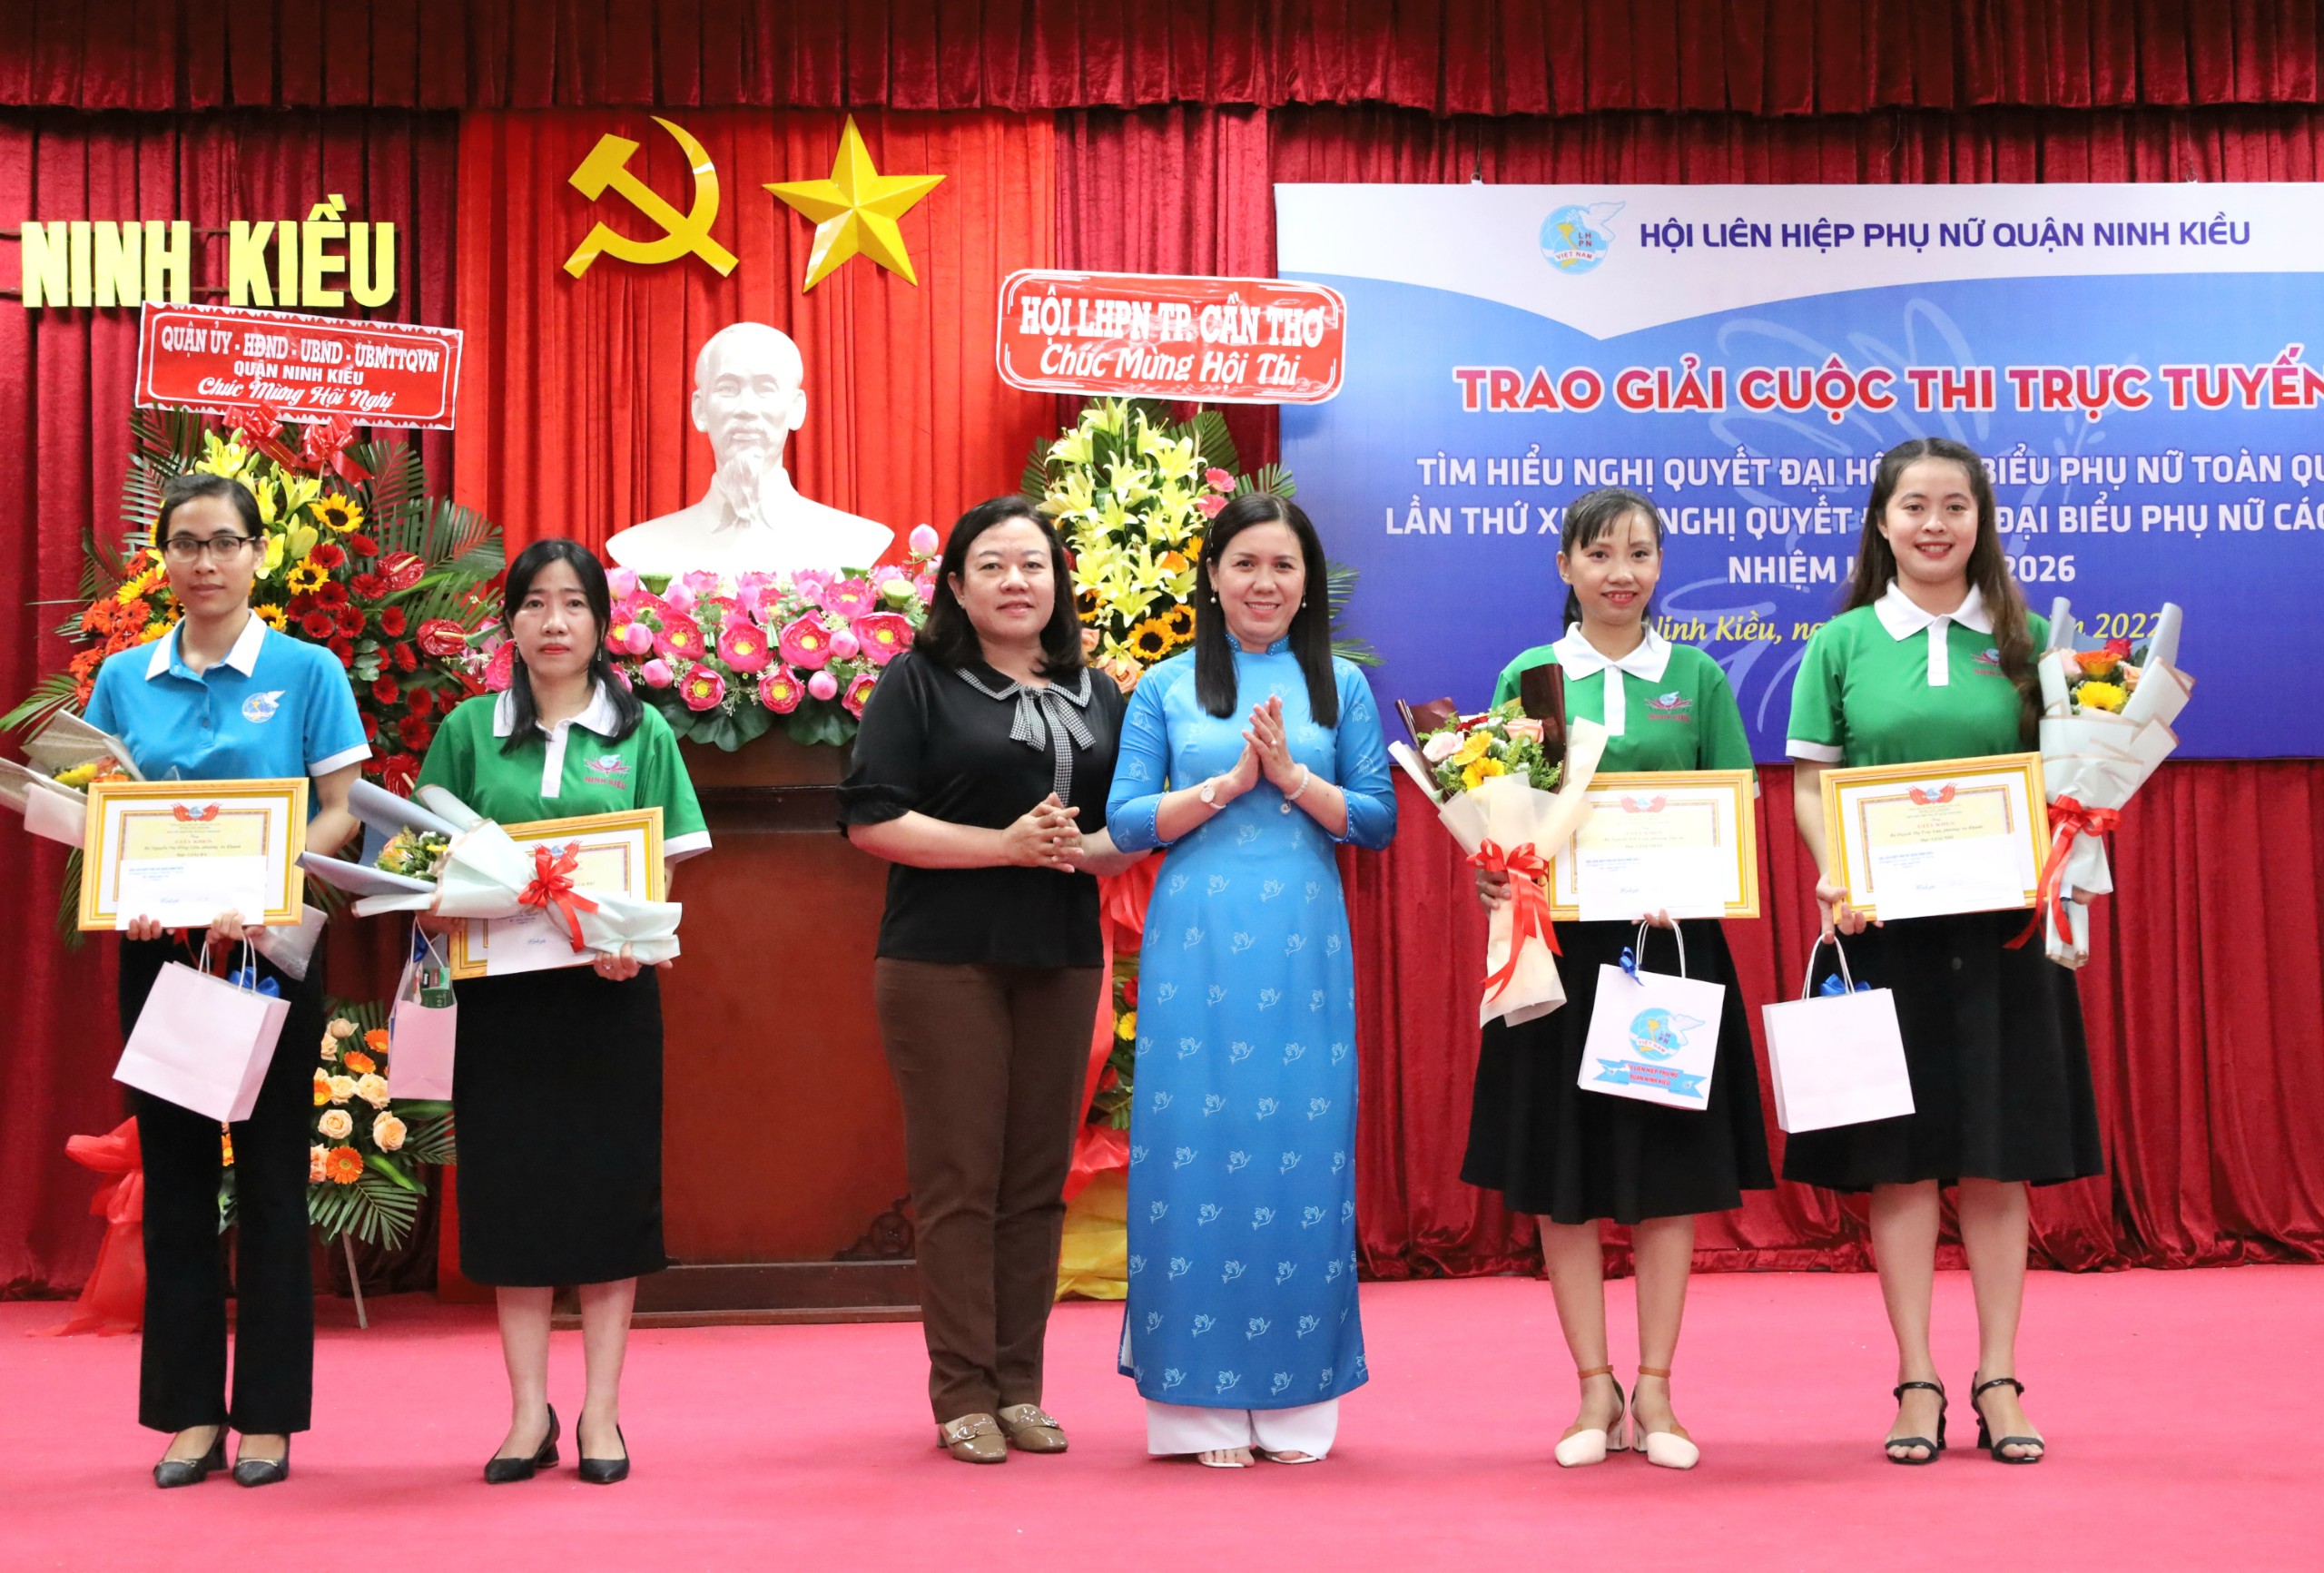 Bà Ngô Mỹ Linh - Phó trưởng Ban Dân vận Quận uỷ Ninh Kiều và bà Nguyễn Thị Hồng Nga - Chủ tịch Hội LHPN quận Ninh Kiều trao giải cho các cá nhân xuất sắc nhất hội thi.